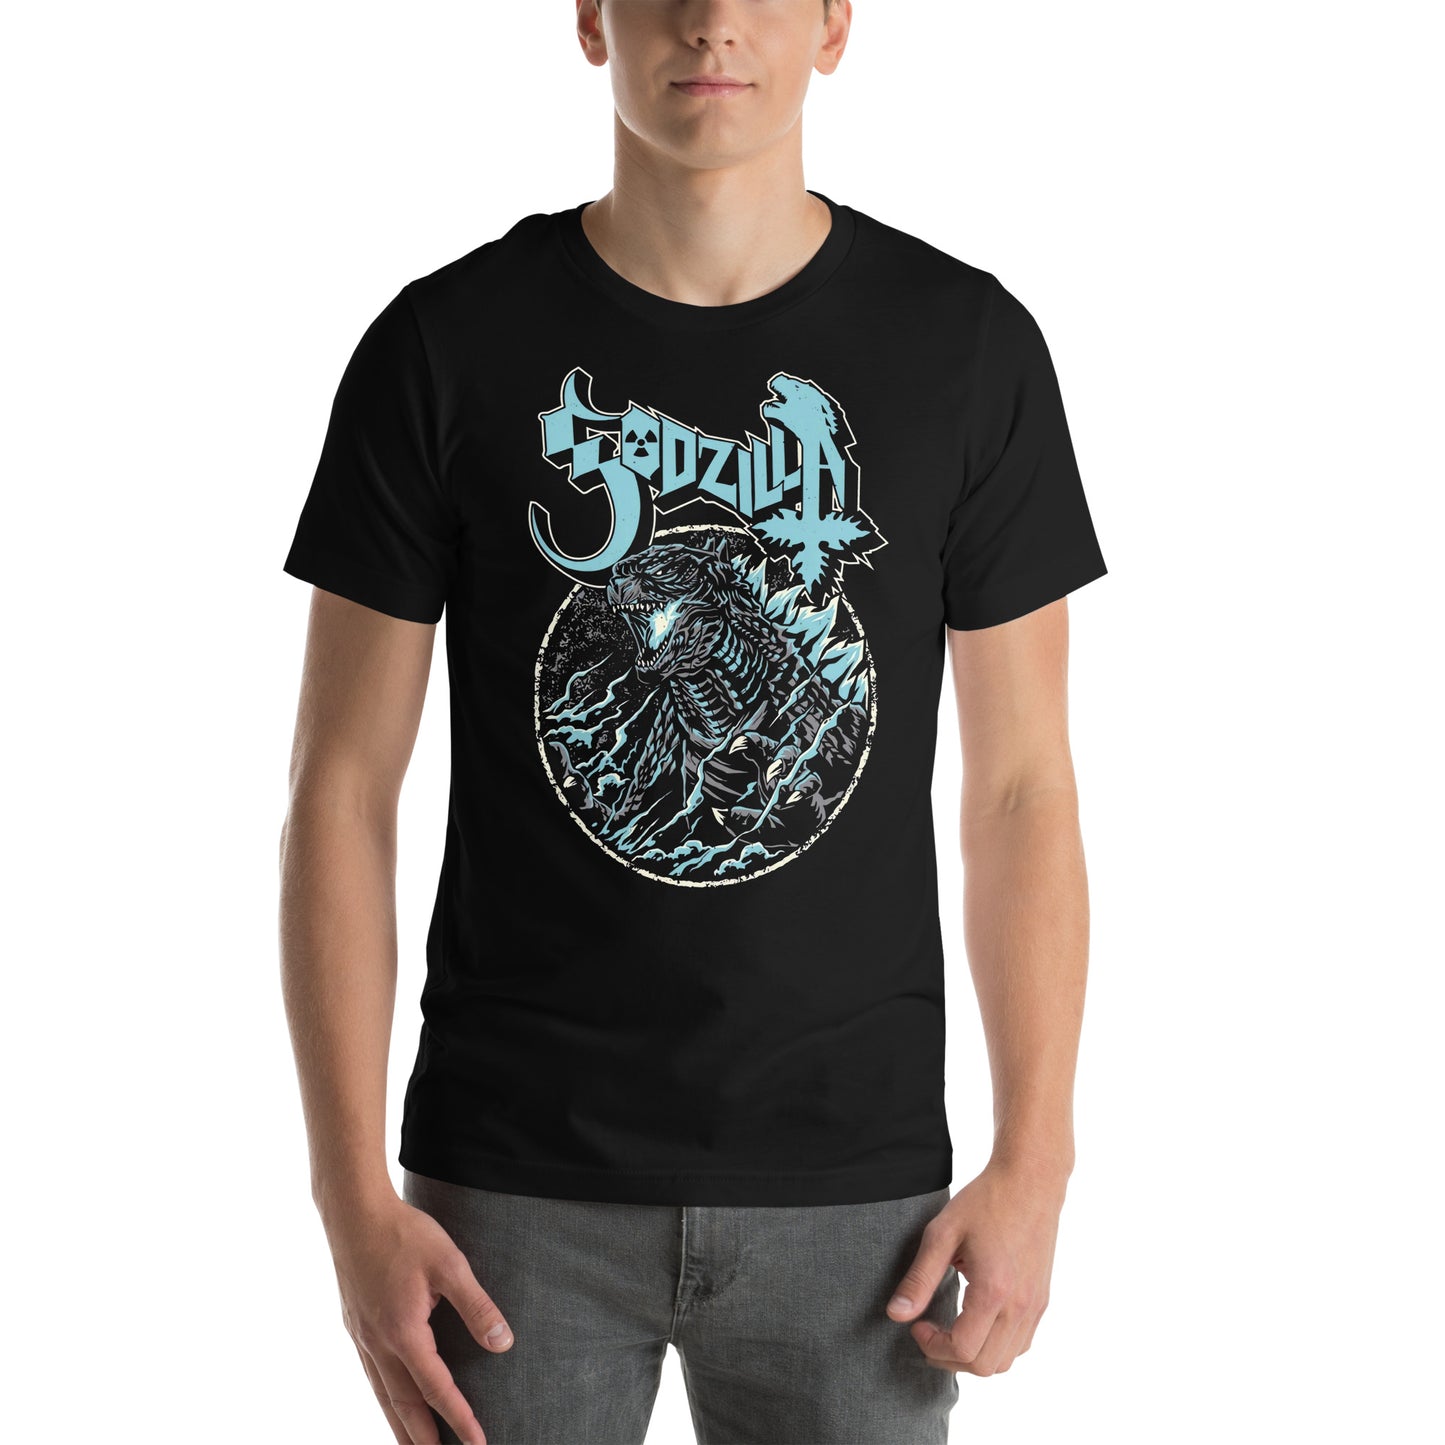 Camiseta Ghostzilla, Disponible en la mejor tienda online para comprar tu merch favorita, la mejor Calidad, compra Ahora en Superstar! 